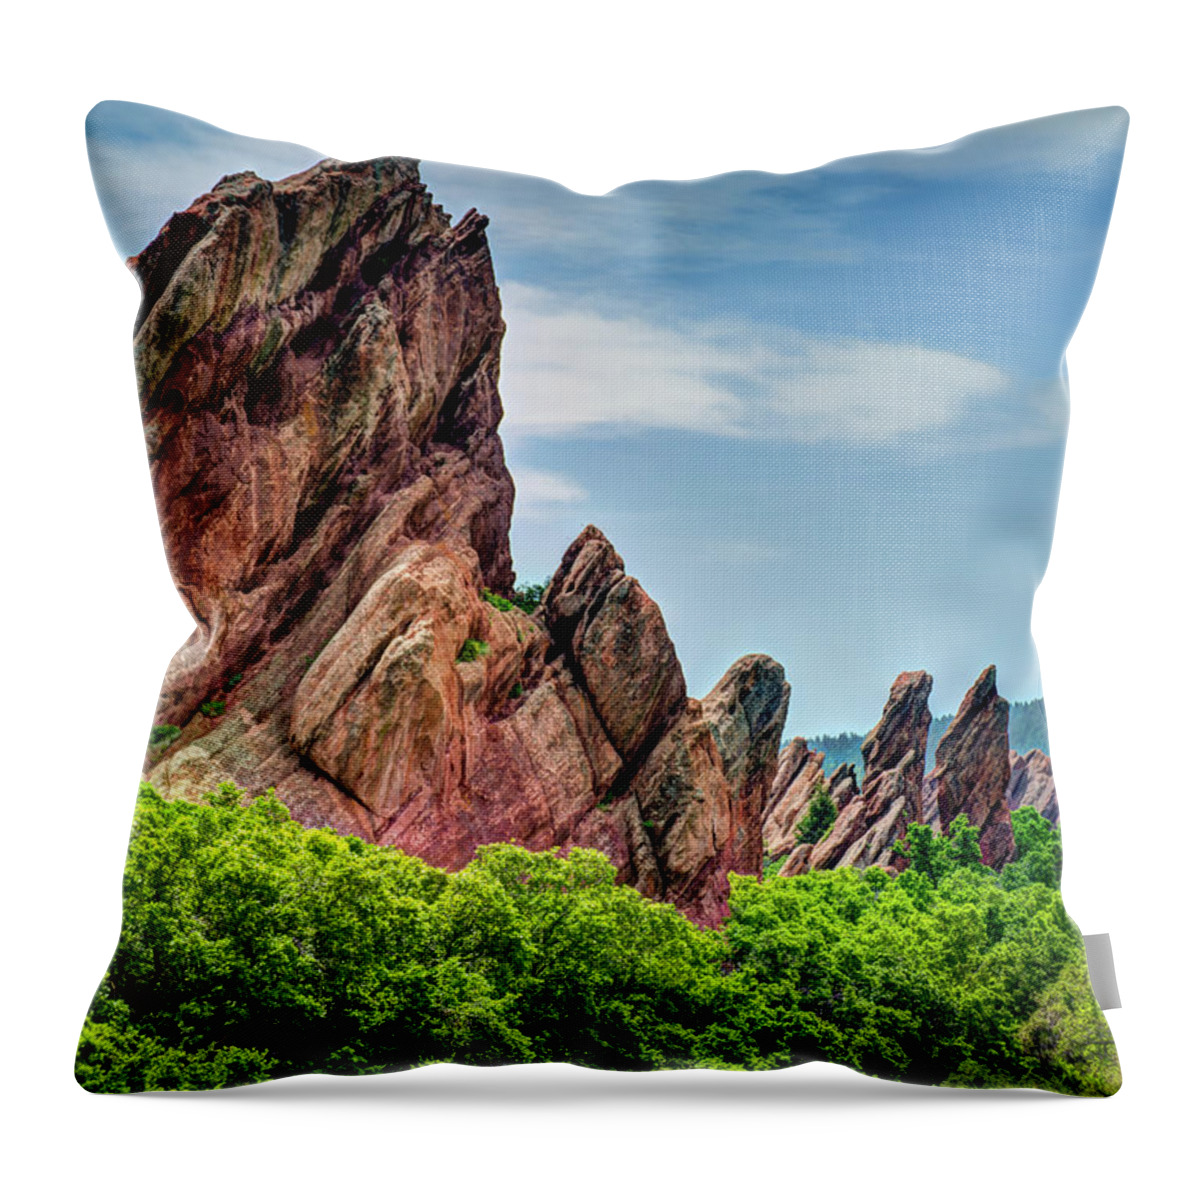 Colorado Throw Pillow featuring the photograph Roxborough Park by David Thompsen